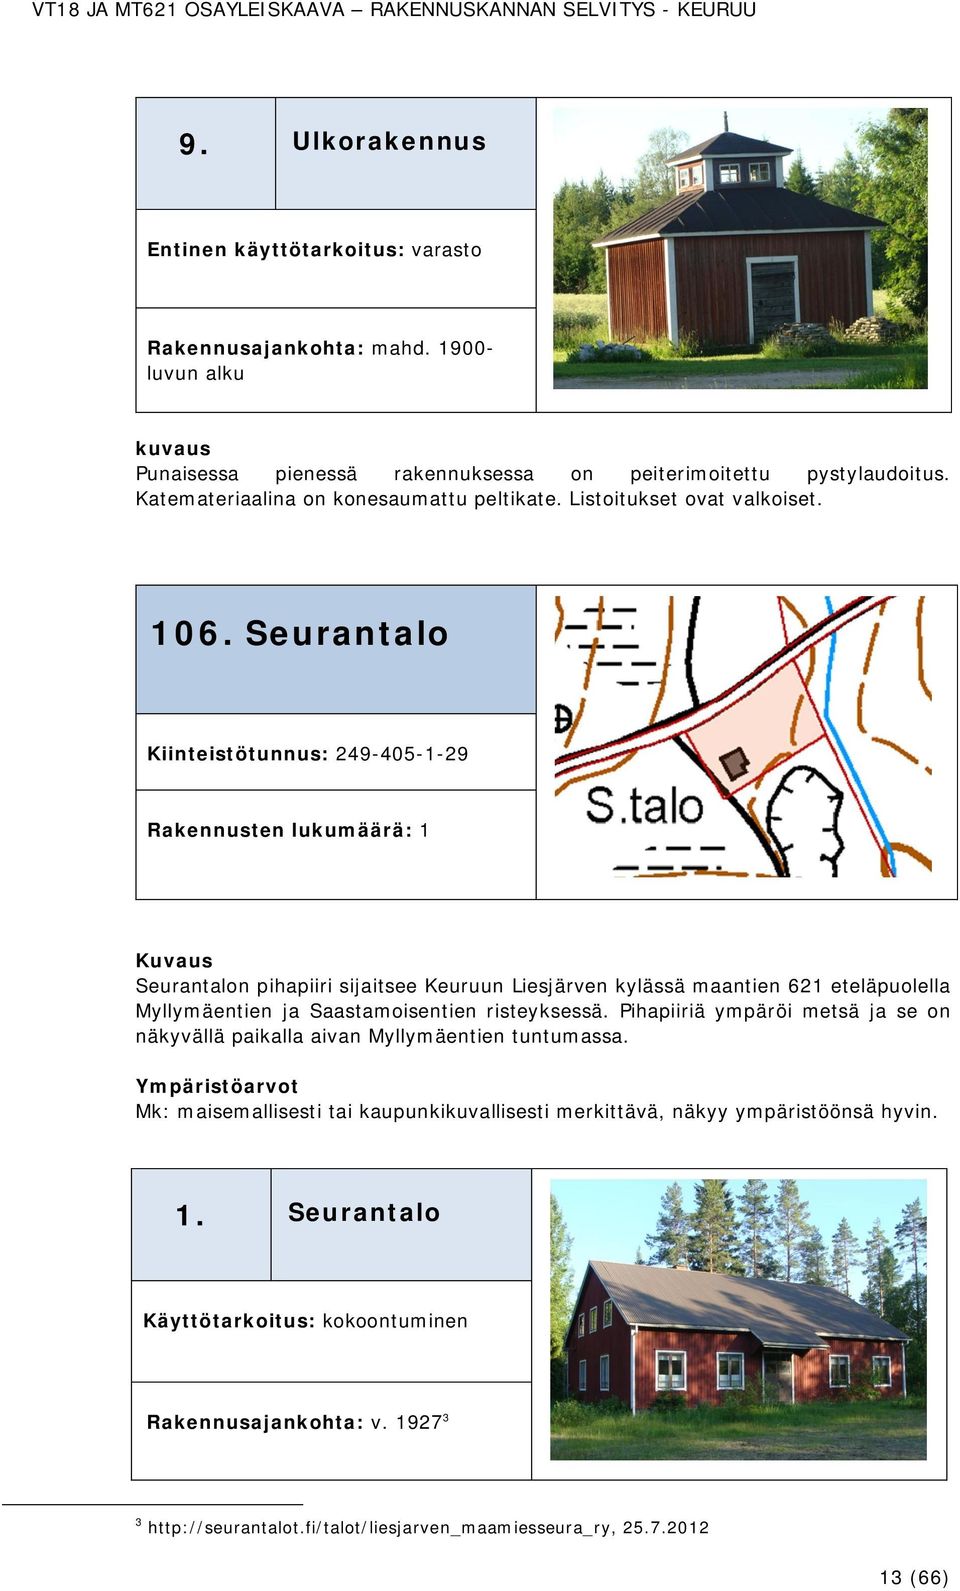 Seurantalo Kiinteistötunnus: 249-405-1-29 Rakennusten lukumäärä: 1 Seurantalon pihapiiri sijaitsee Keuruun Liesjärven kylässä maantien 621 eteläpuolella Myllymäentien ja Saastamoisentien